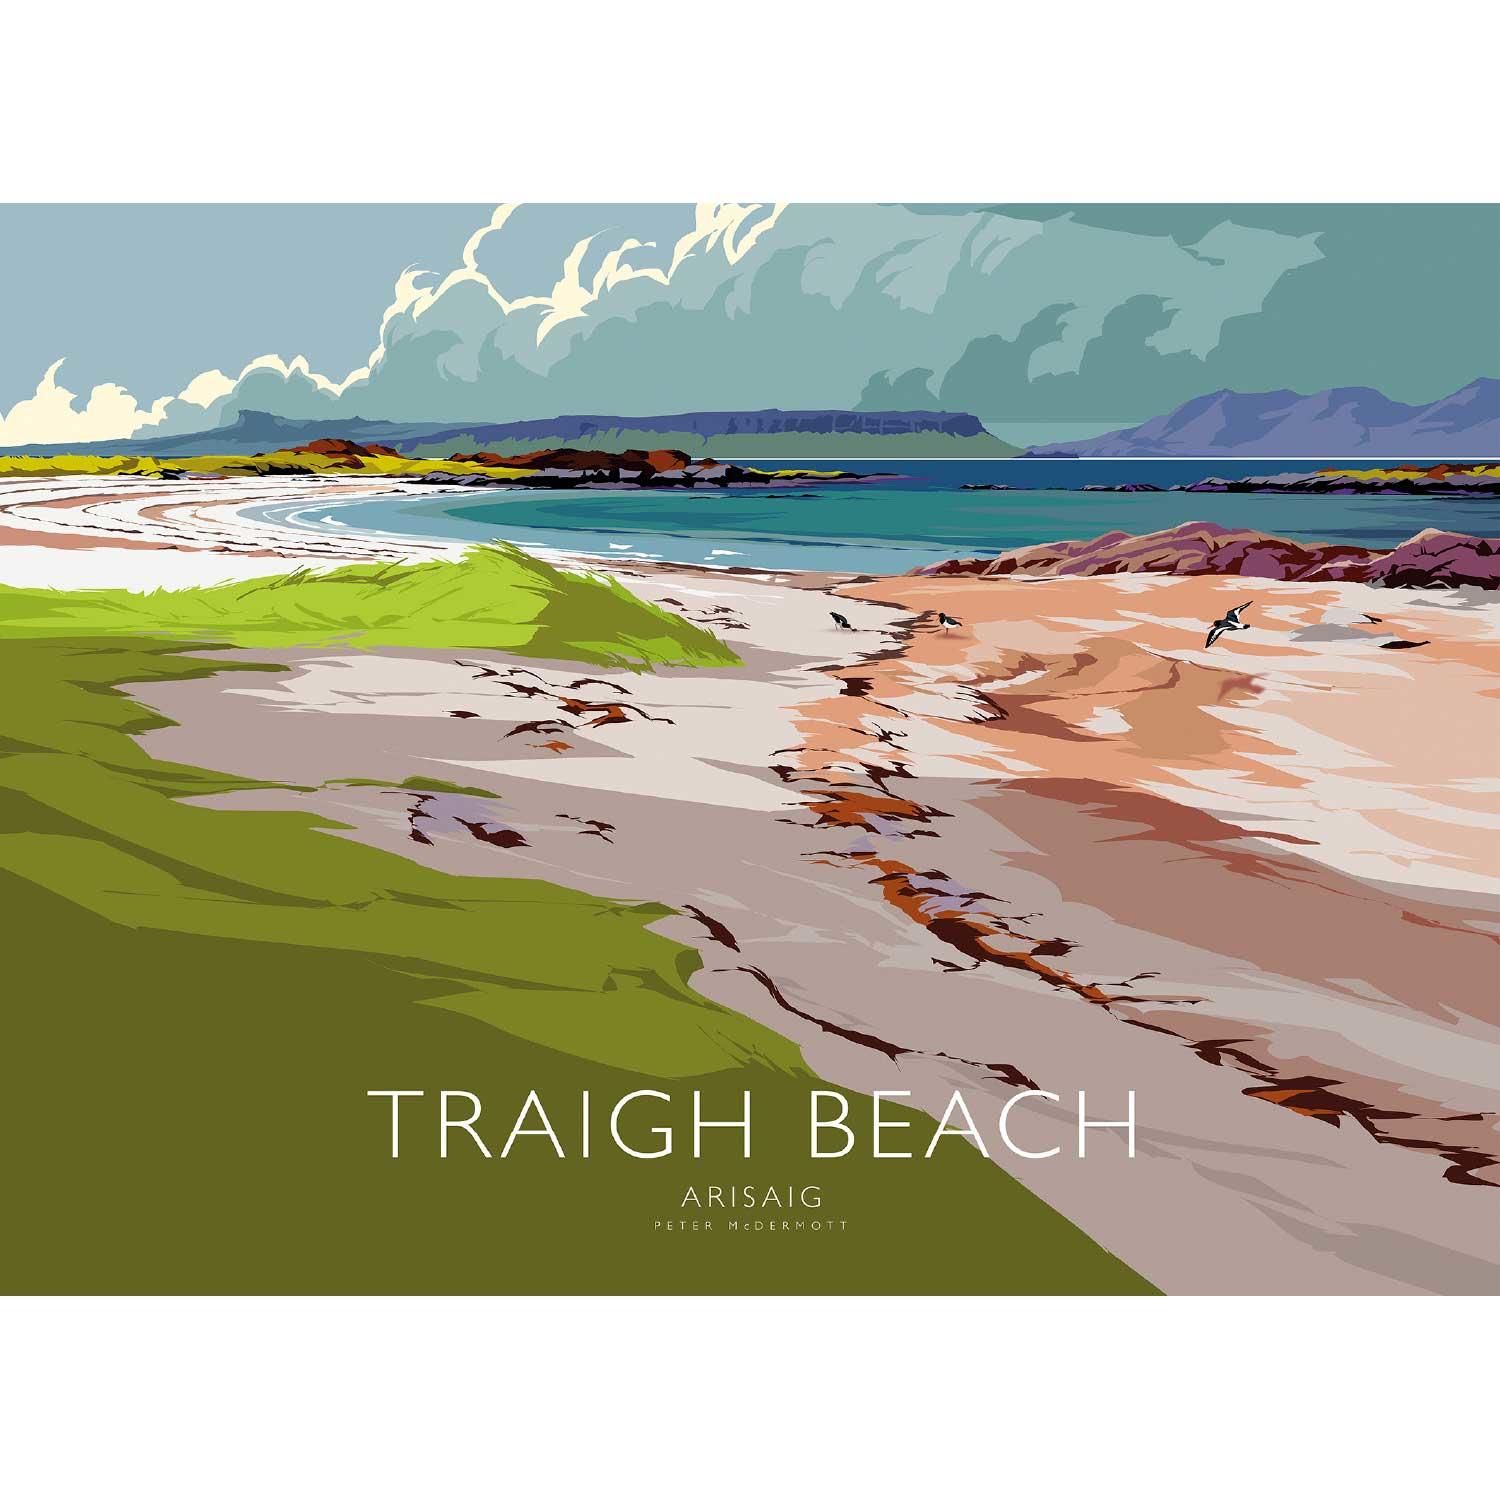 Traigh Beach Arisaig by Peter McDermott